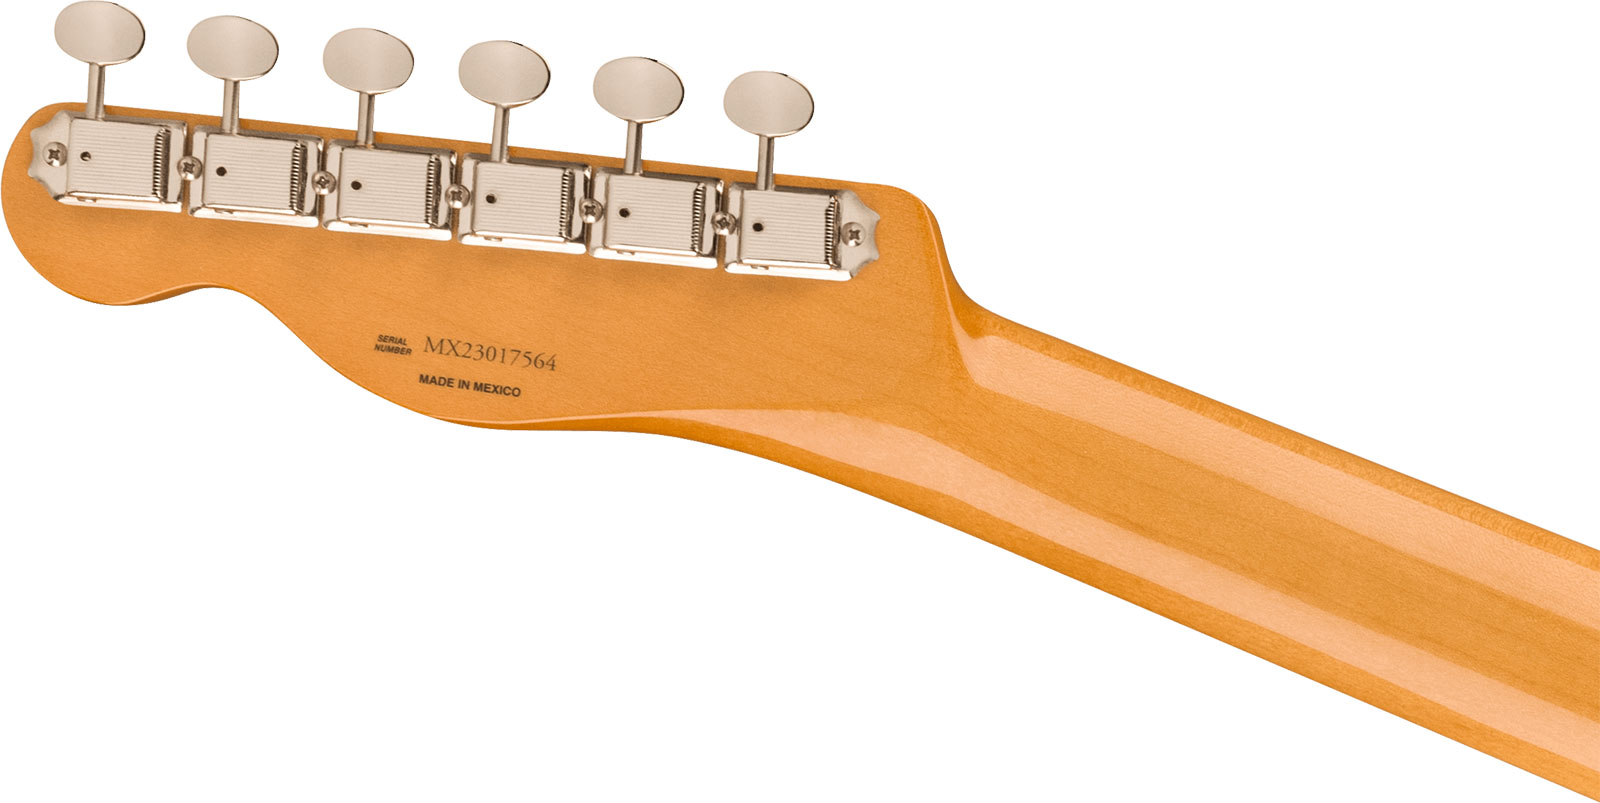 Fender Tele 60s Vintera 2 Mex 2s Ht Rw - Fiesta Red - Guitarra eléctrica con forma de tel - Variation 3